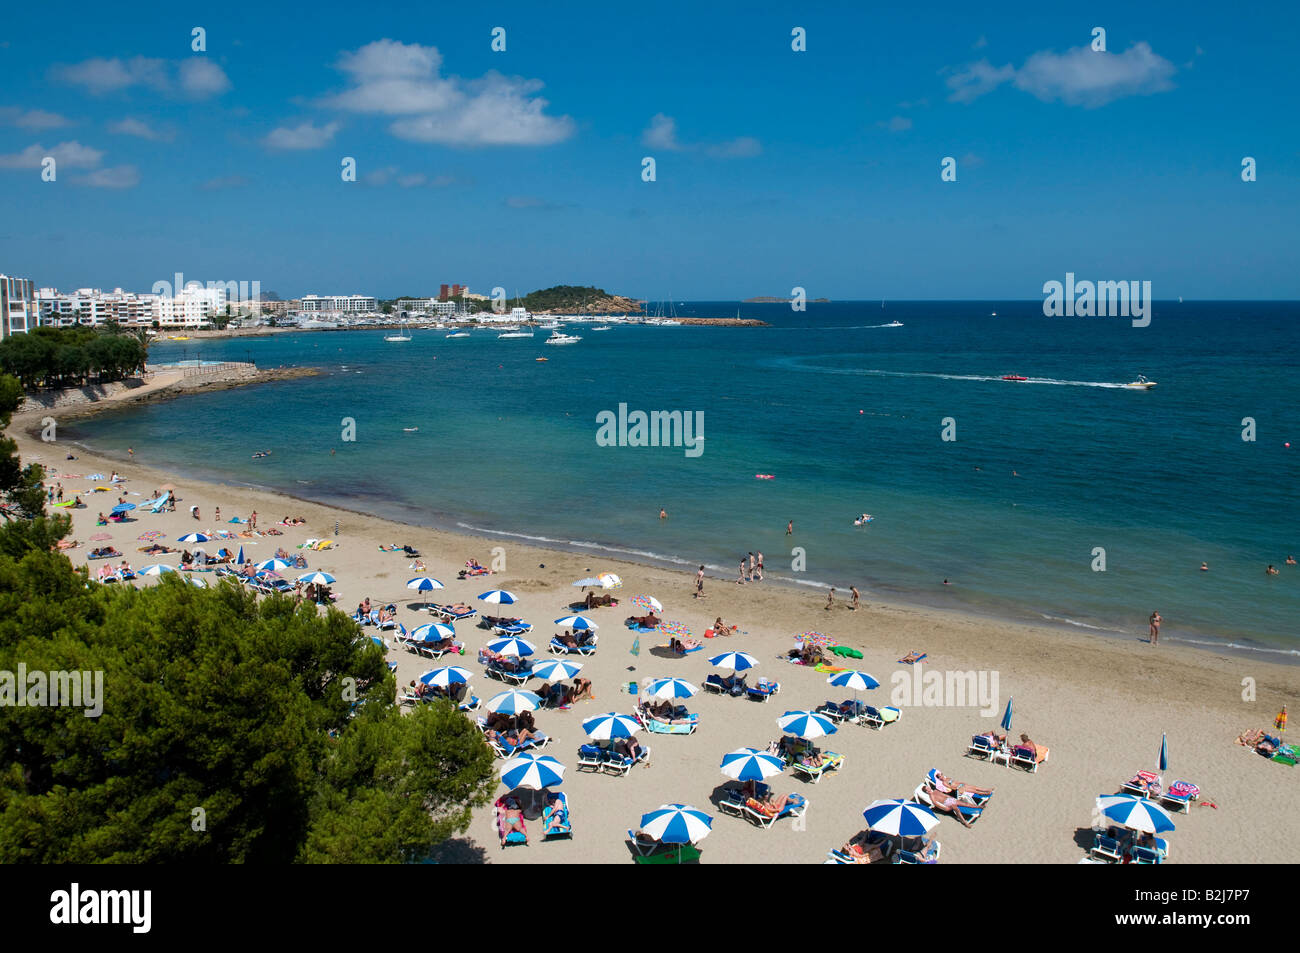 Beach at Santa Eulalia,Ibiza,Balearics.Spain Stock Photo